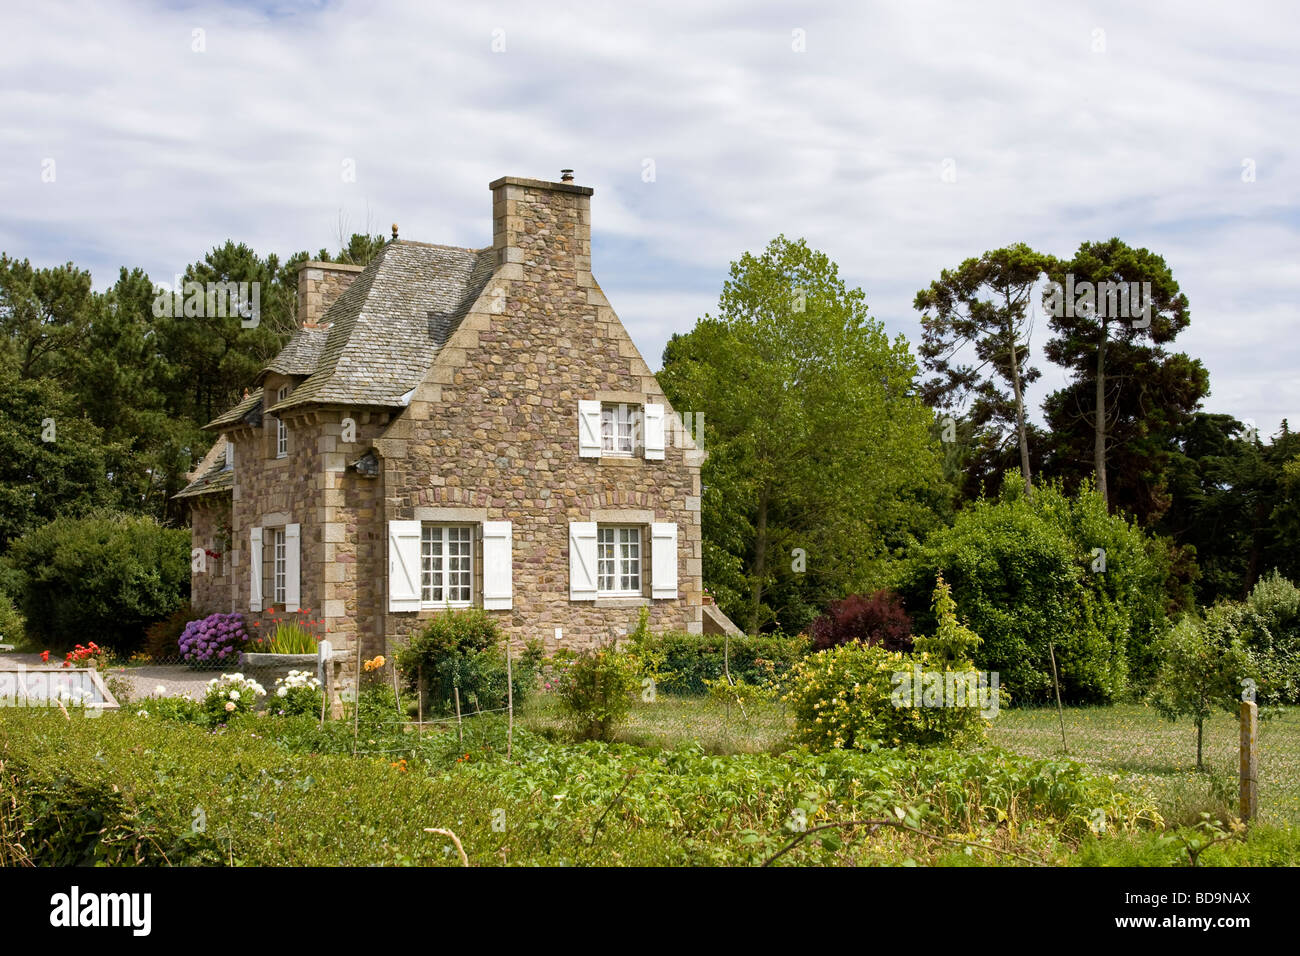 Bretagne typique maison en pierre près de la forêt Banque D'Images